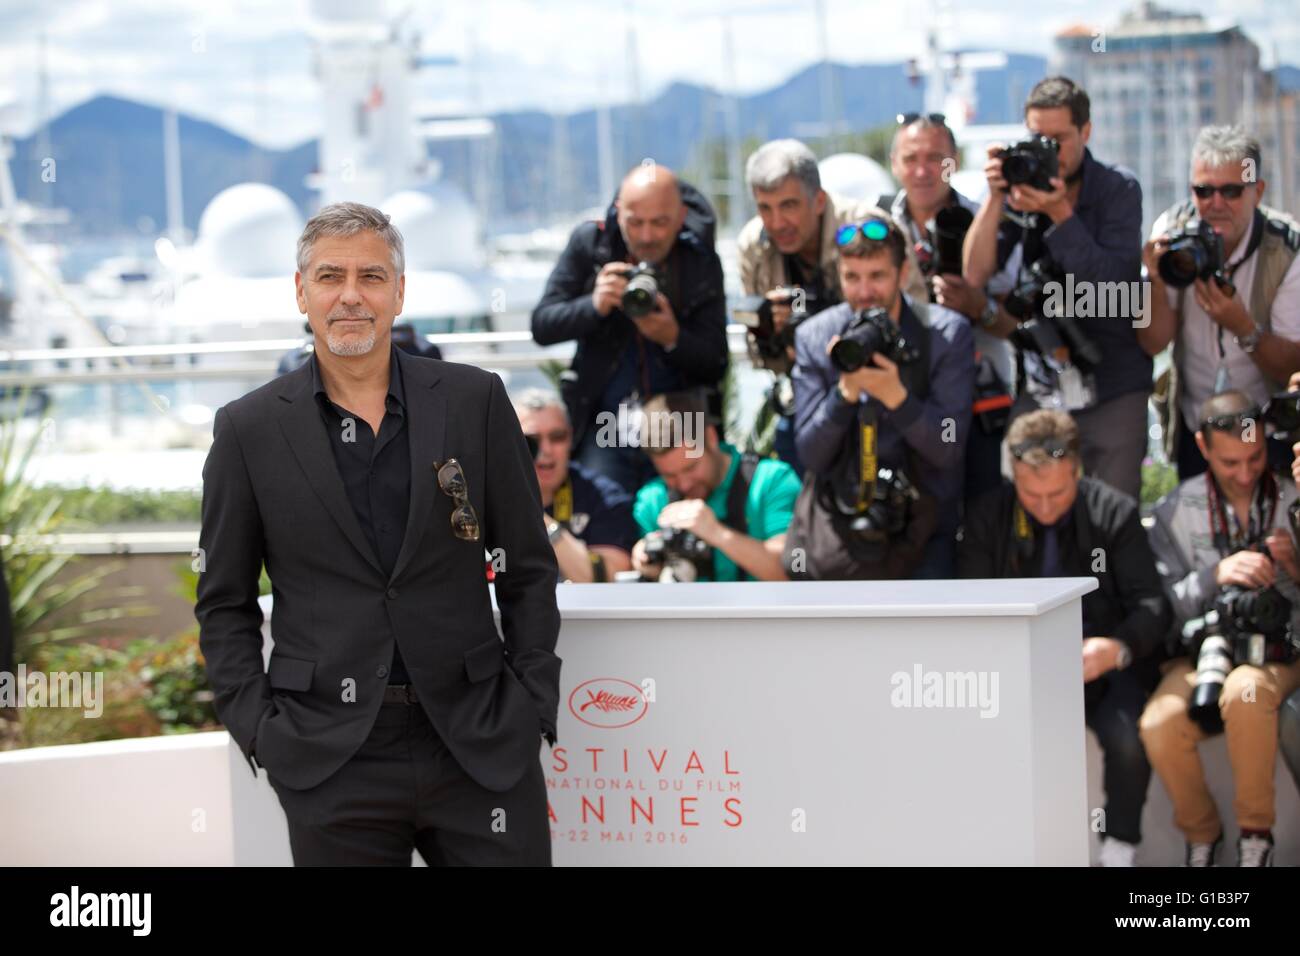 Cannes, France. 12 mai, 2016. Pose de l'acteur George Clooney lors d'un photocall pour le film "l'argent Monster' au cours de la 69e édition du Festival de Cannes à Cannes, France, 12 mai 2016. Credit : Jin Yu/Xinhua/Alamy Live News Banque D'Images